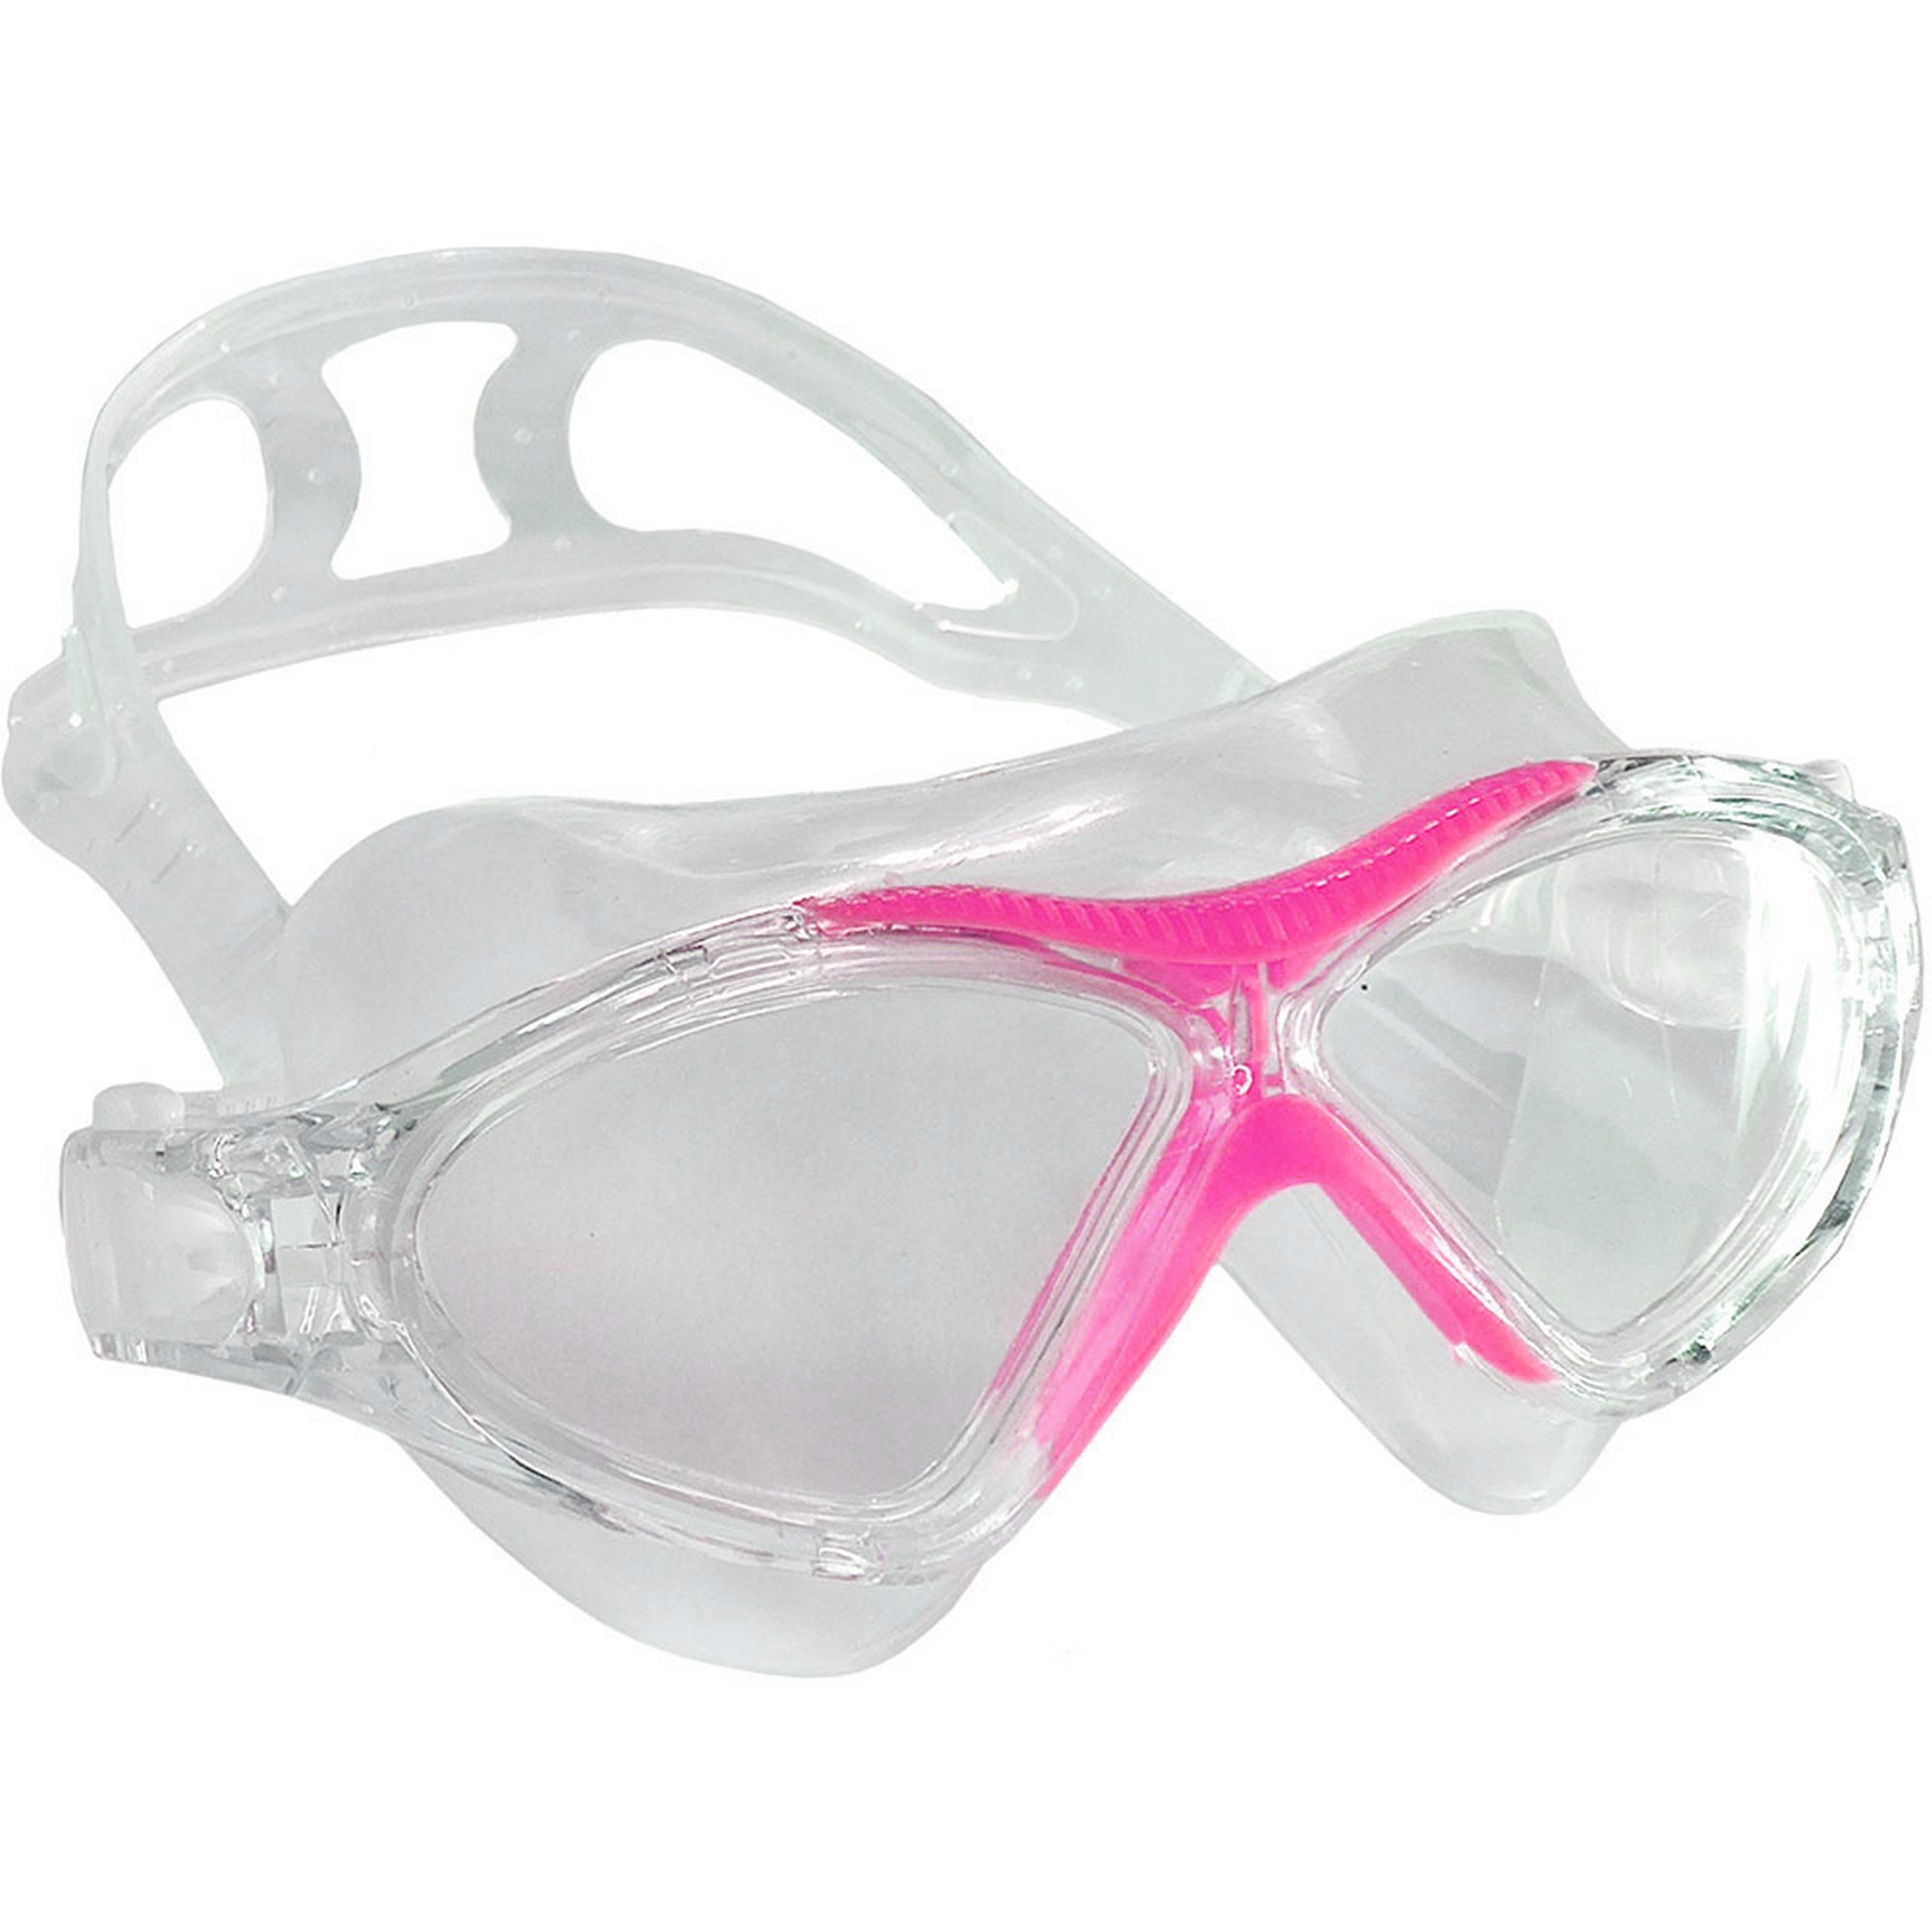 Купить Очки полумаска для плавания Sportex взрослая, силикон E33183-5 розовый,